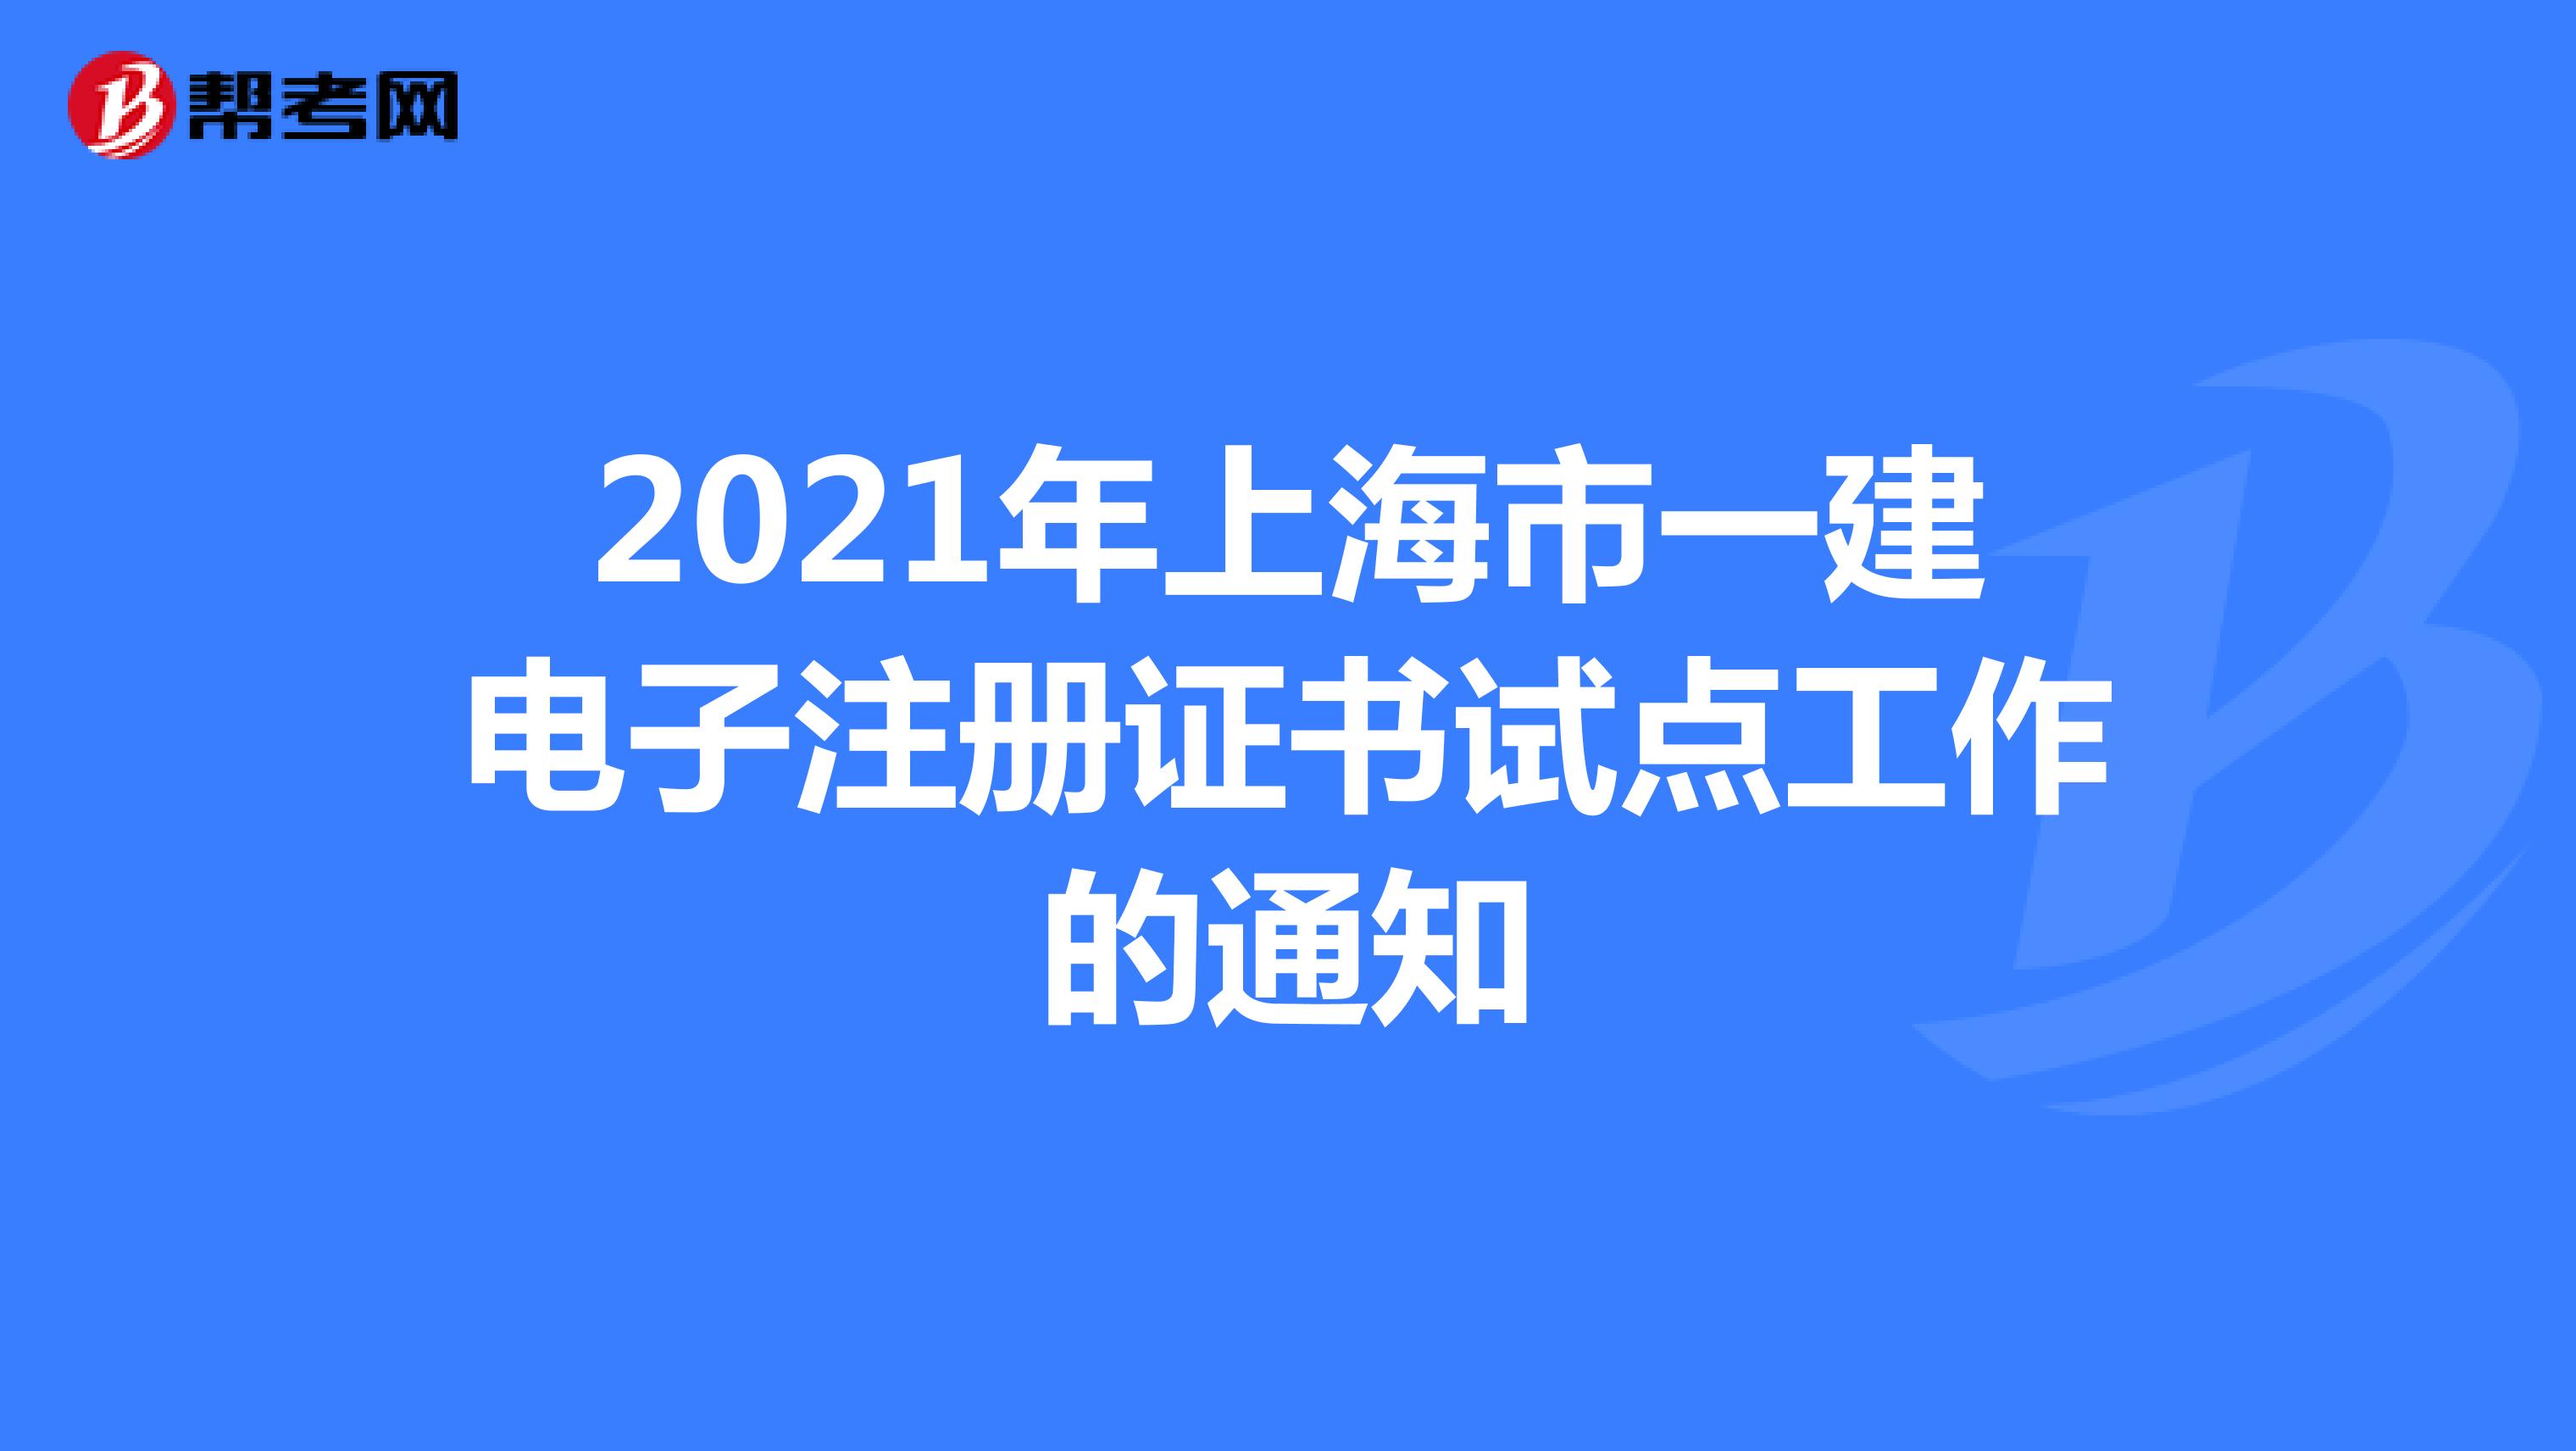 2021年上海市一建电子注册证书试点工作的通知